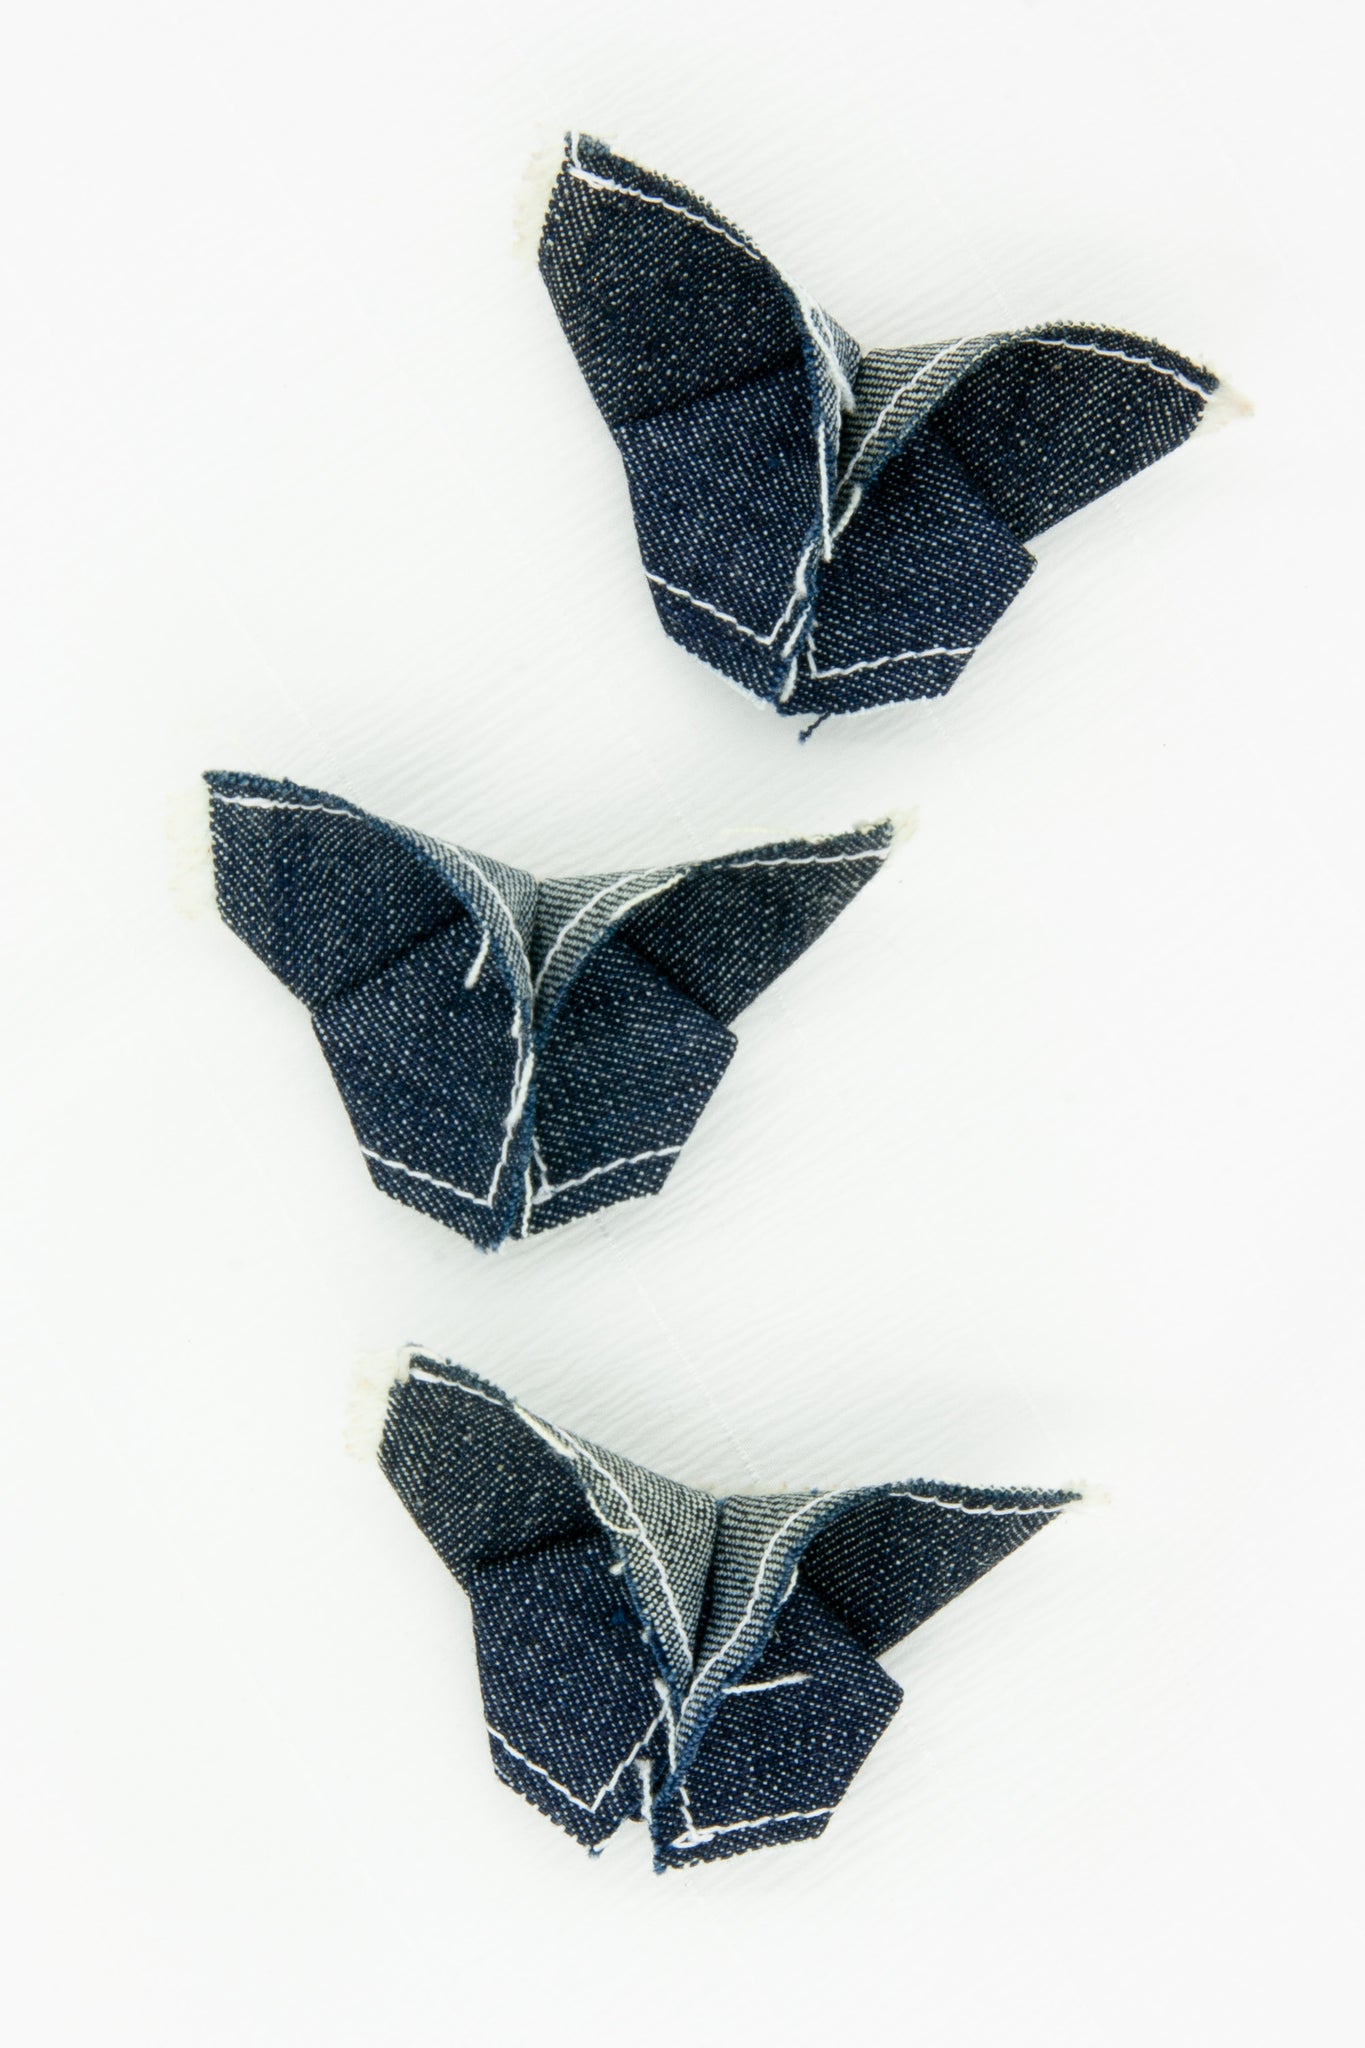 Butterfly Brooch in Dark Indigo Denim with Contrast Stitching